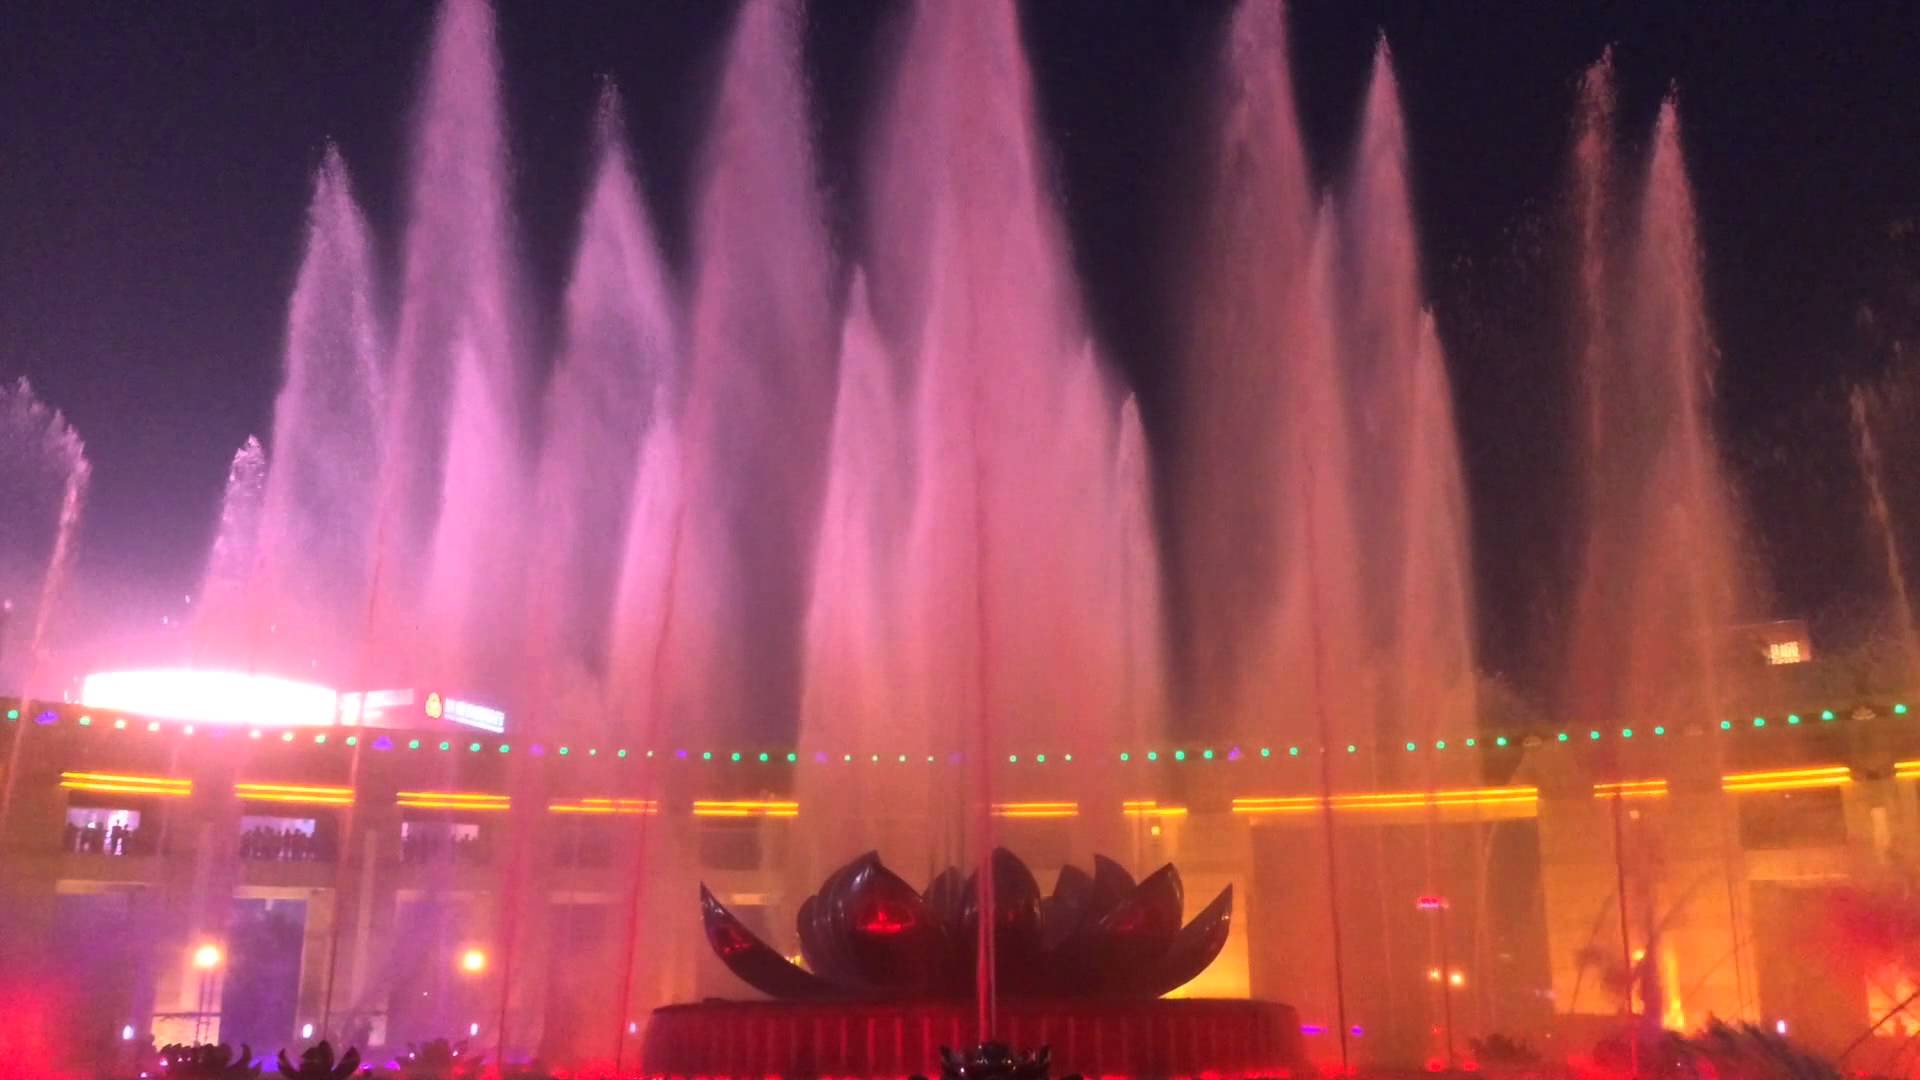 Water Fountain Music display in Jinan, China - YouTube